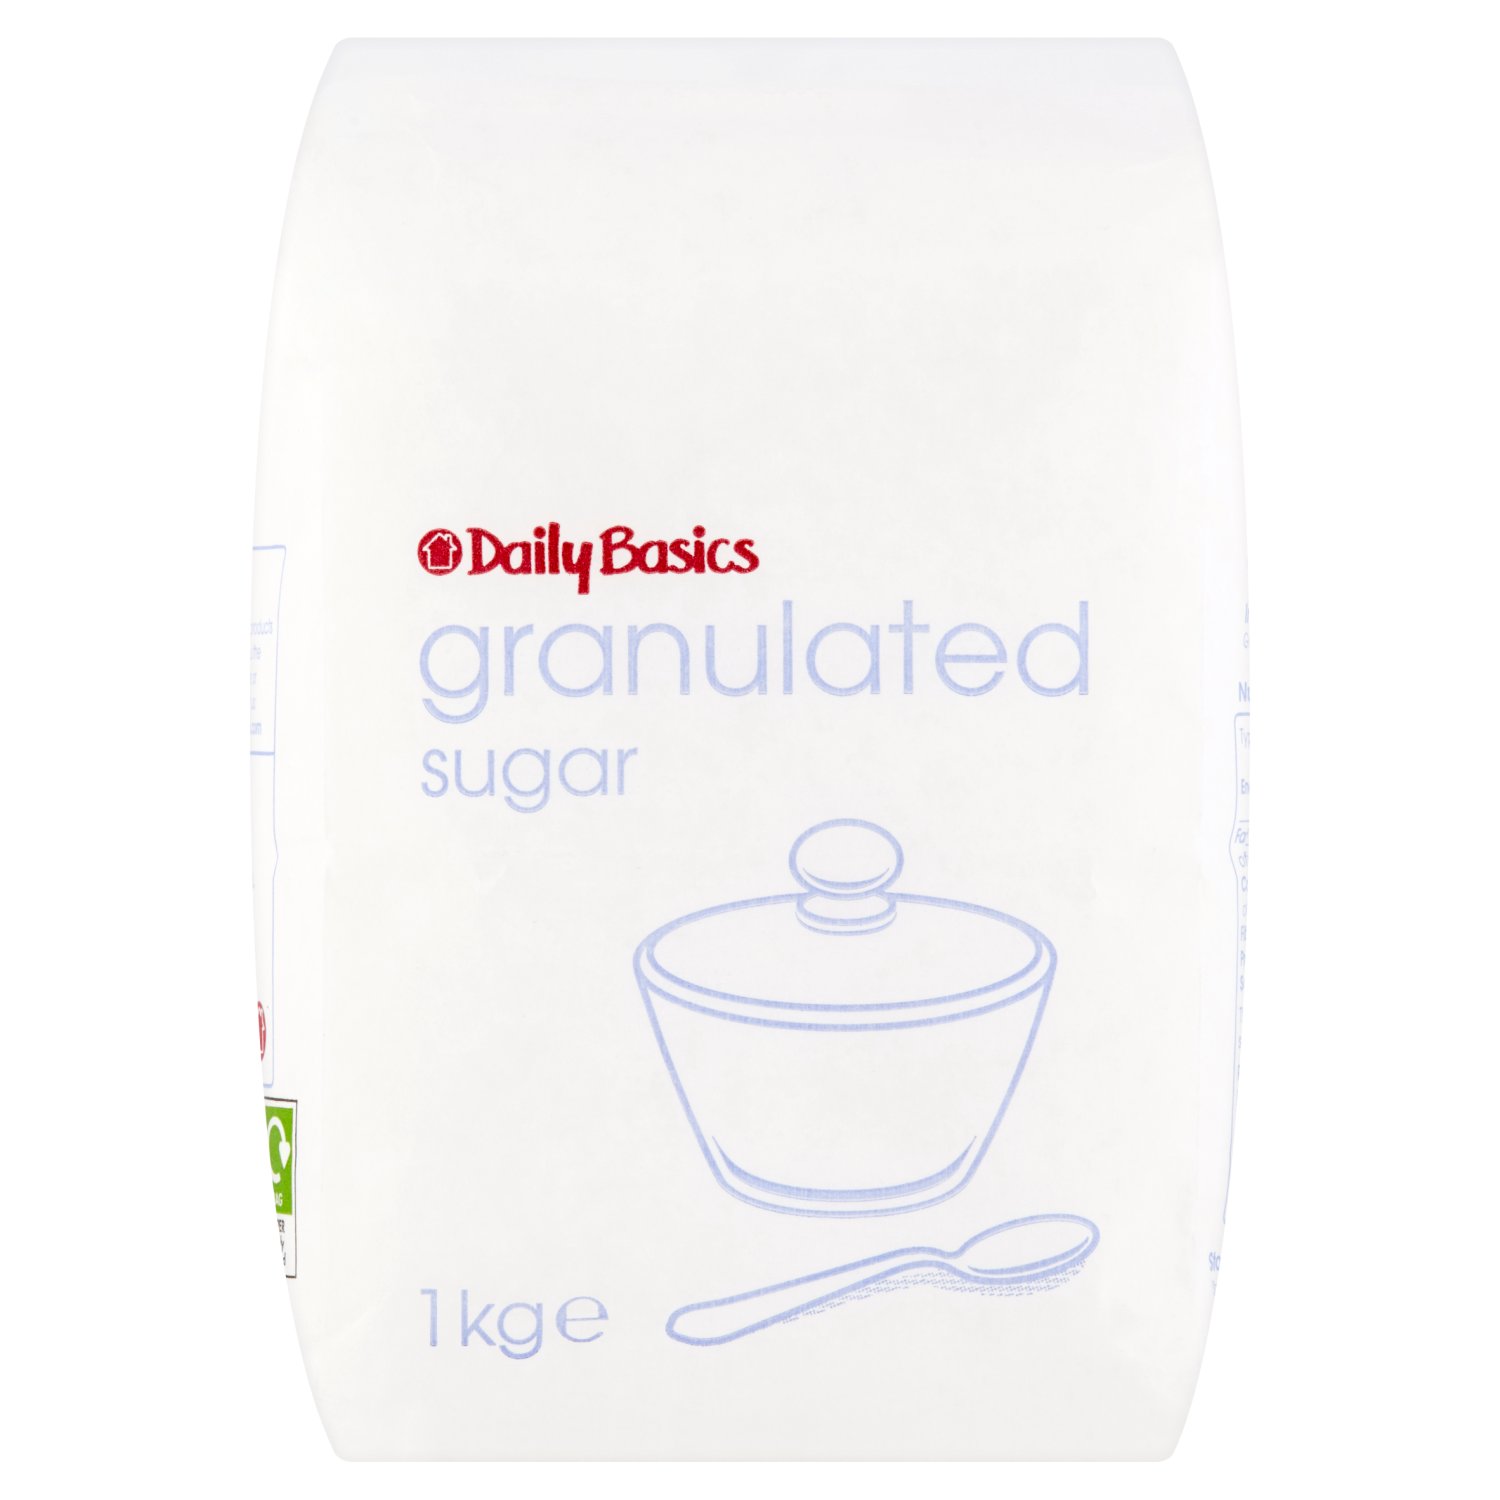 Daily Basics Granulated Sugar (1 kg)